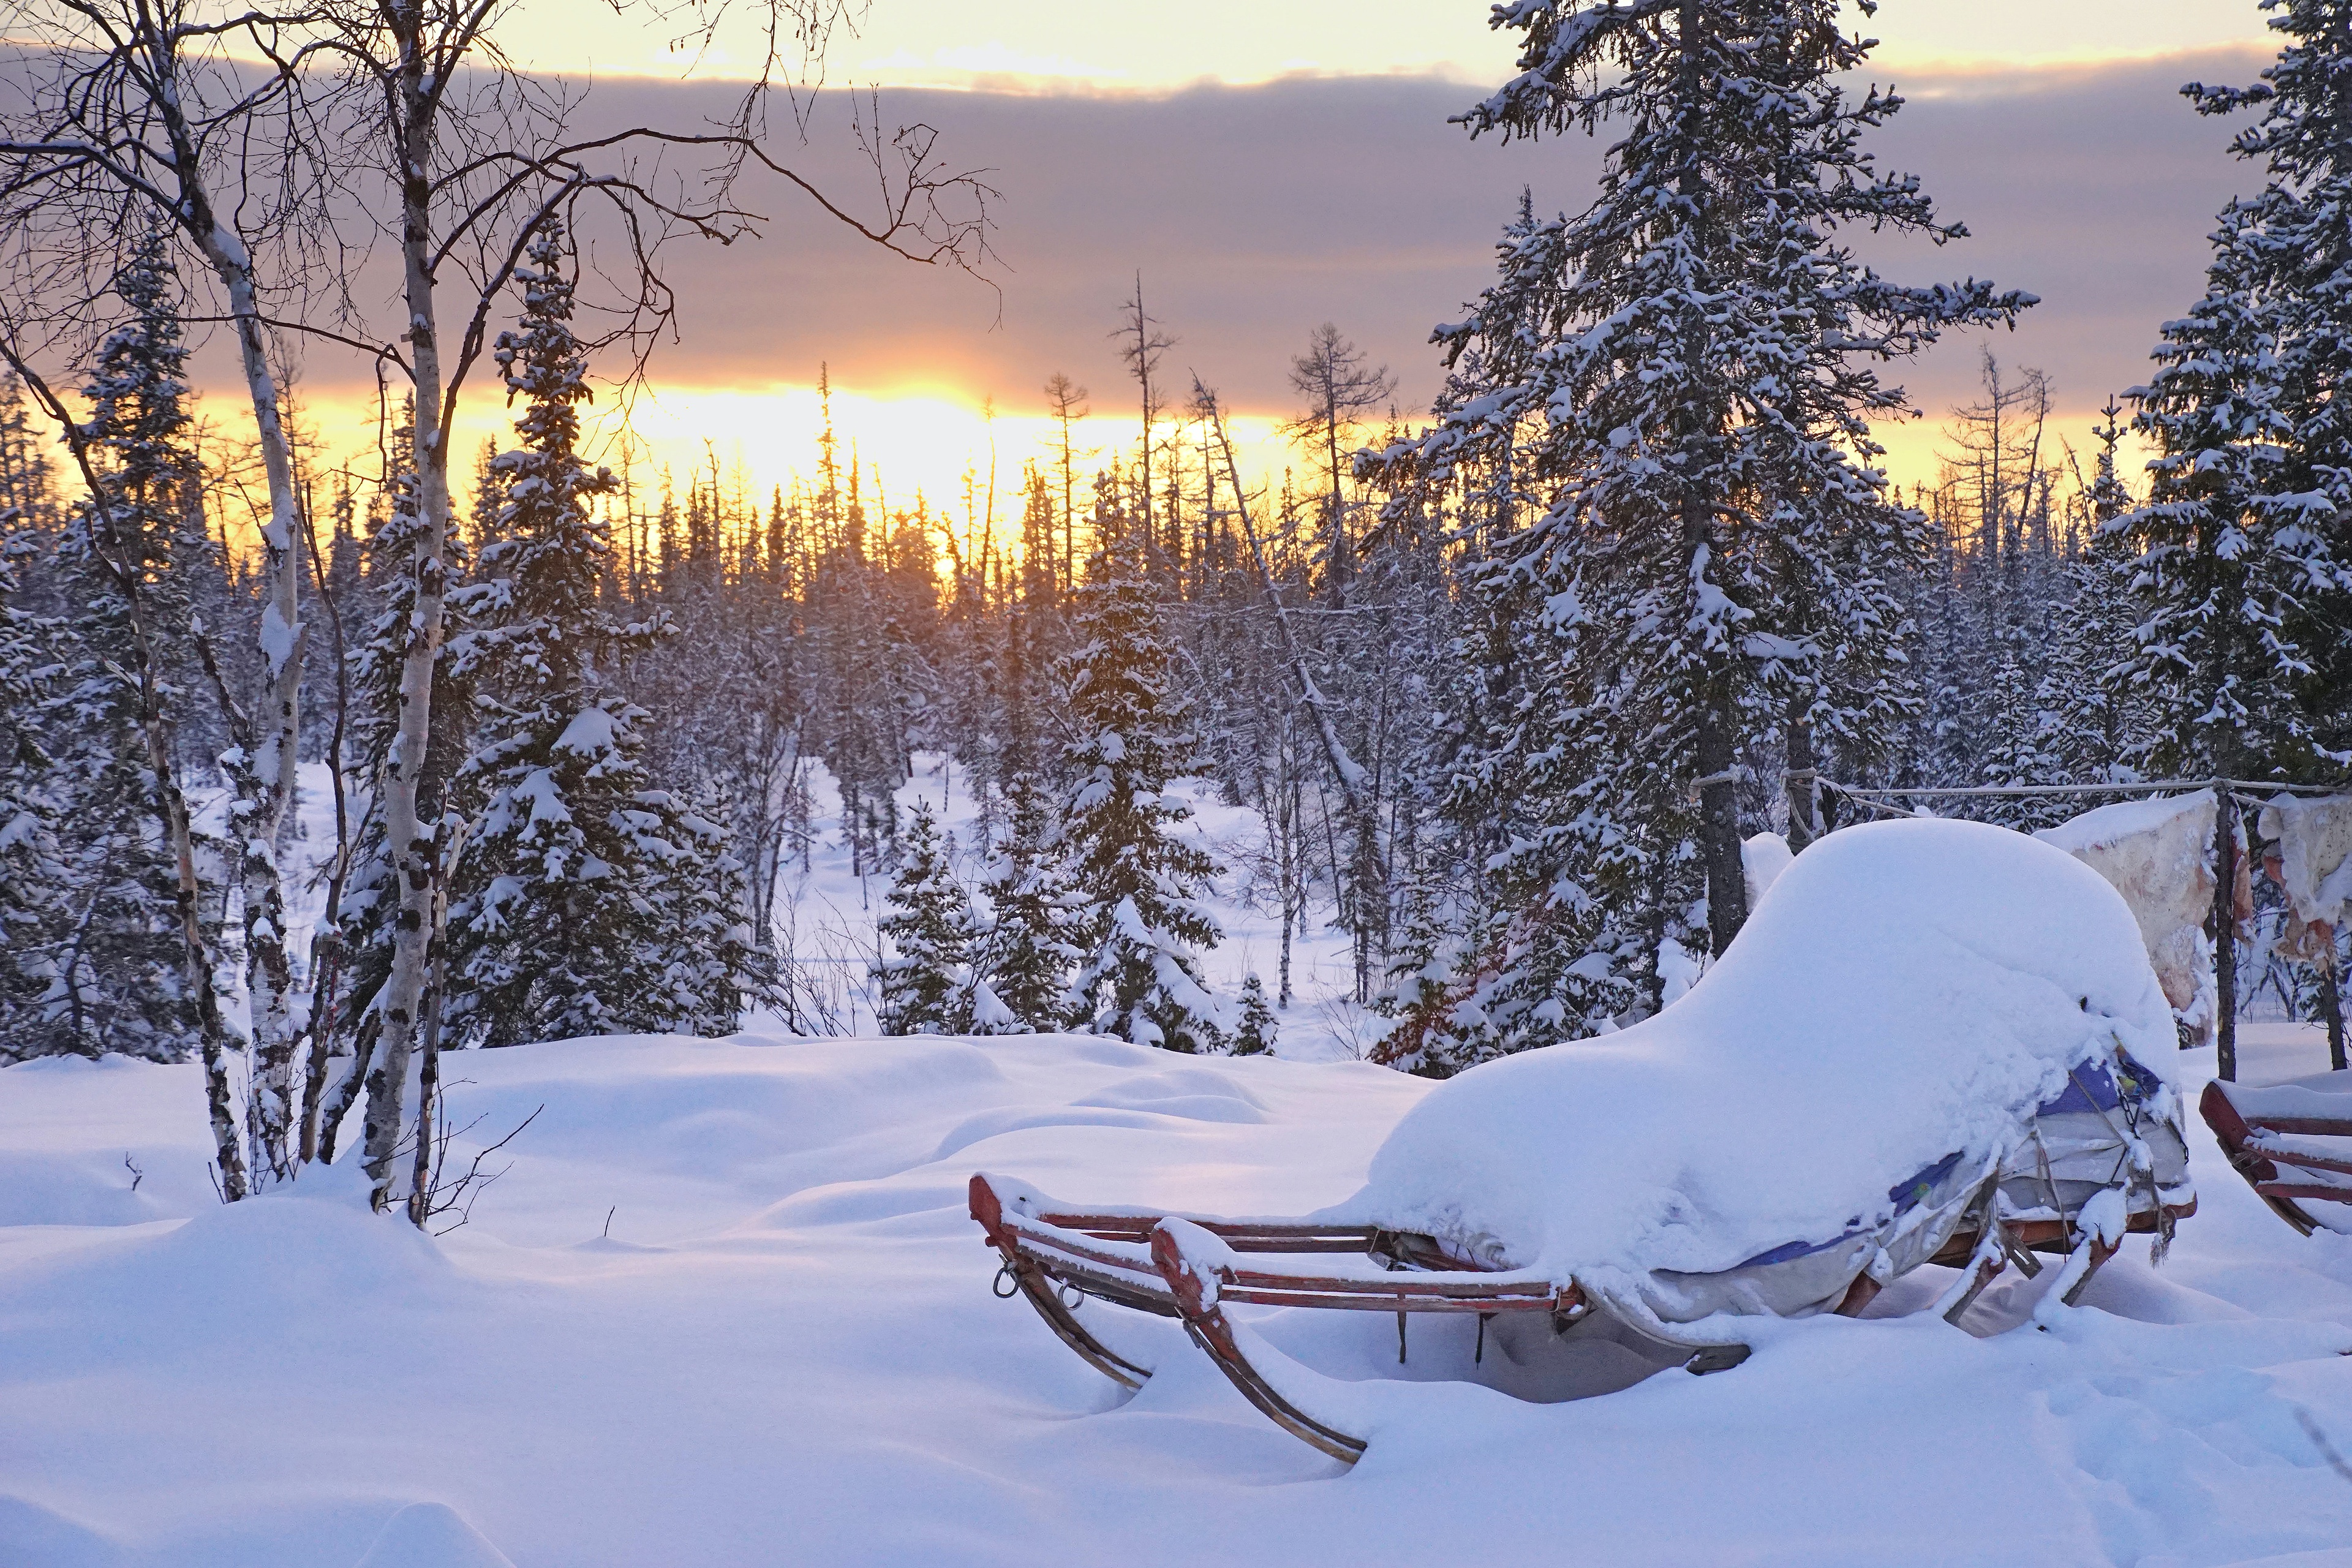 Скачать обои бесплатно Зима, Природа, Закат, Снег, Сосна, Сани, Фотографии картинка на рабочий стол ПК